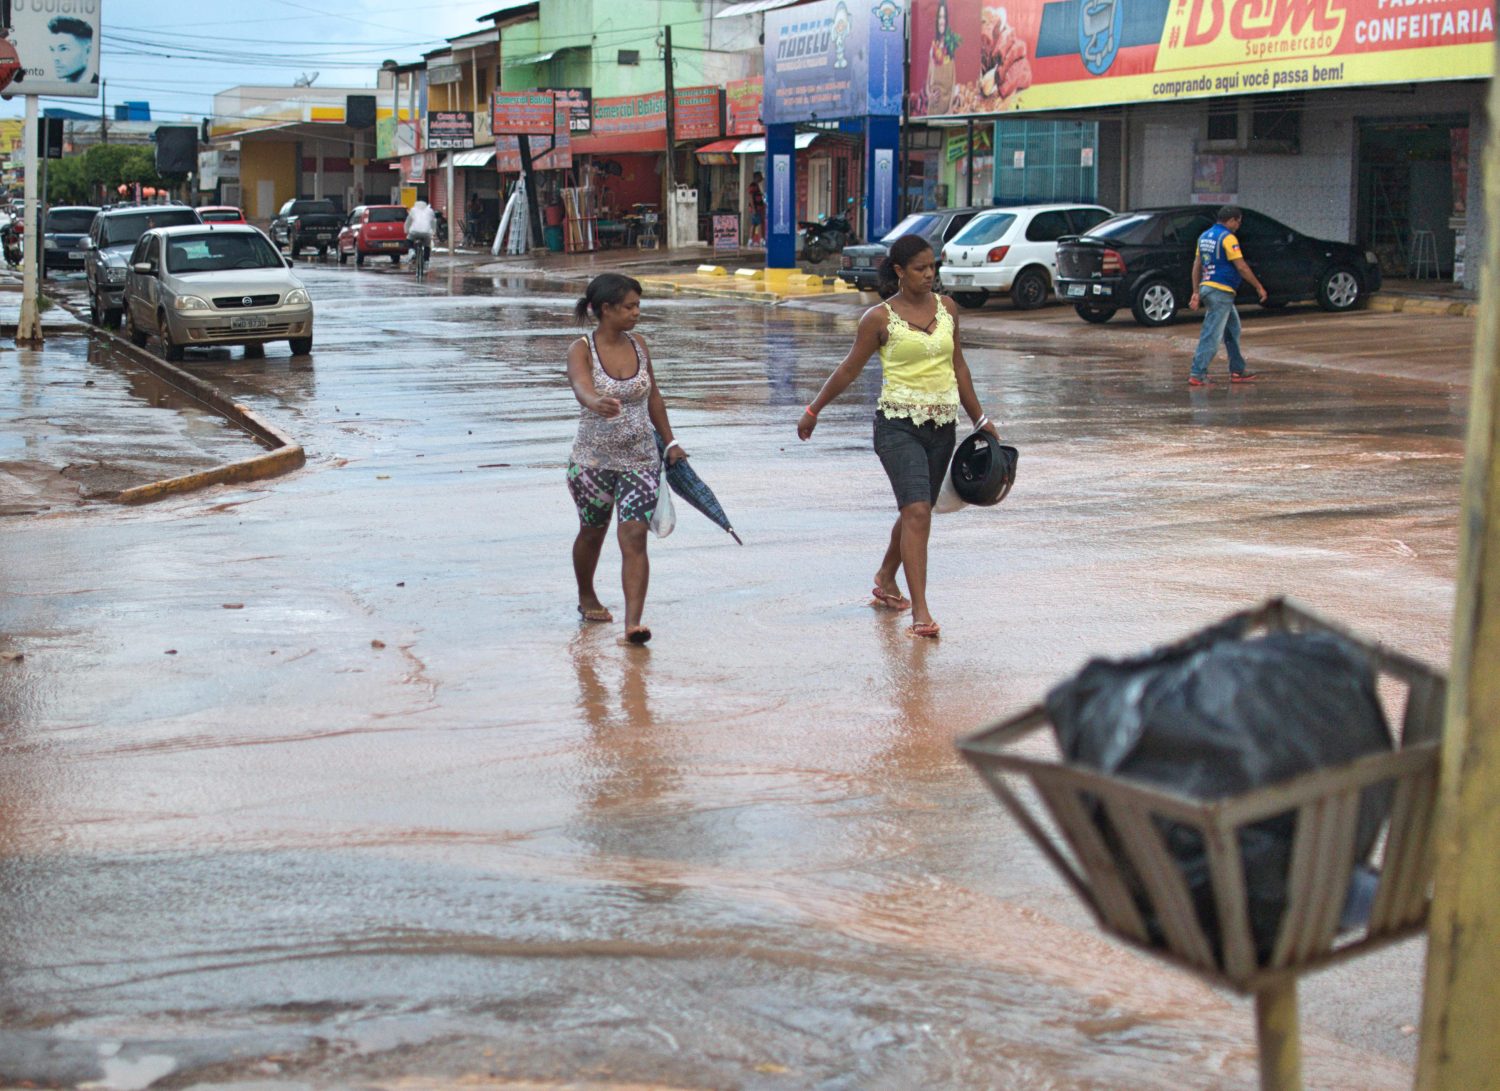 Ruas de Santa Cruz inundadas: falta infraestrutura básica (Foto Flávia Milhorance)